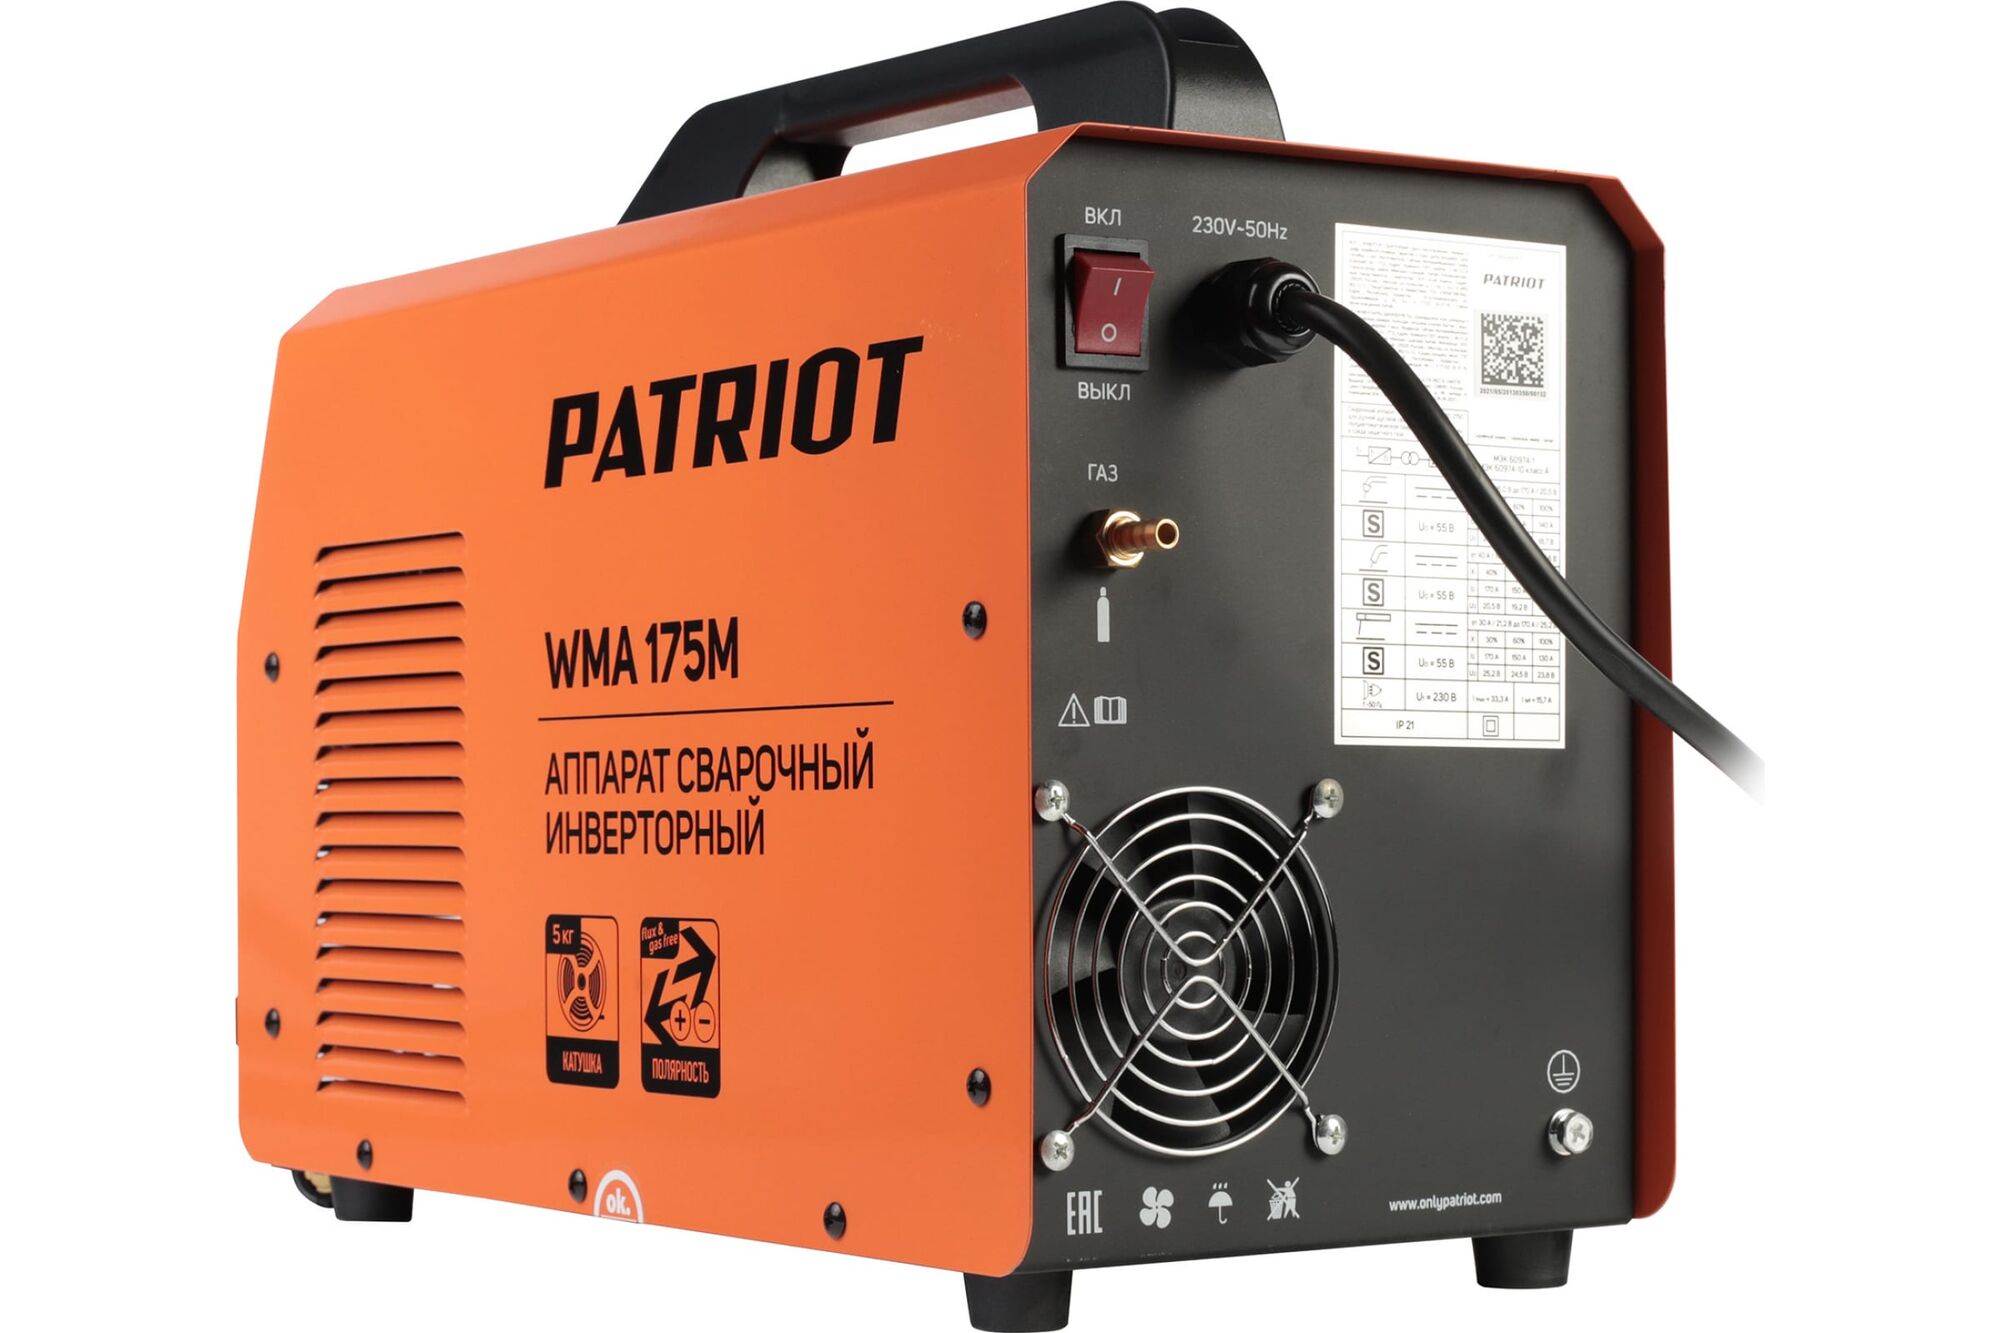 Сварочный инверторный полуавтомат PATRIOT WMA 175M MIG/MAG/MMA, полуавтоматическая сварка в среде 605302150 Patriot 6